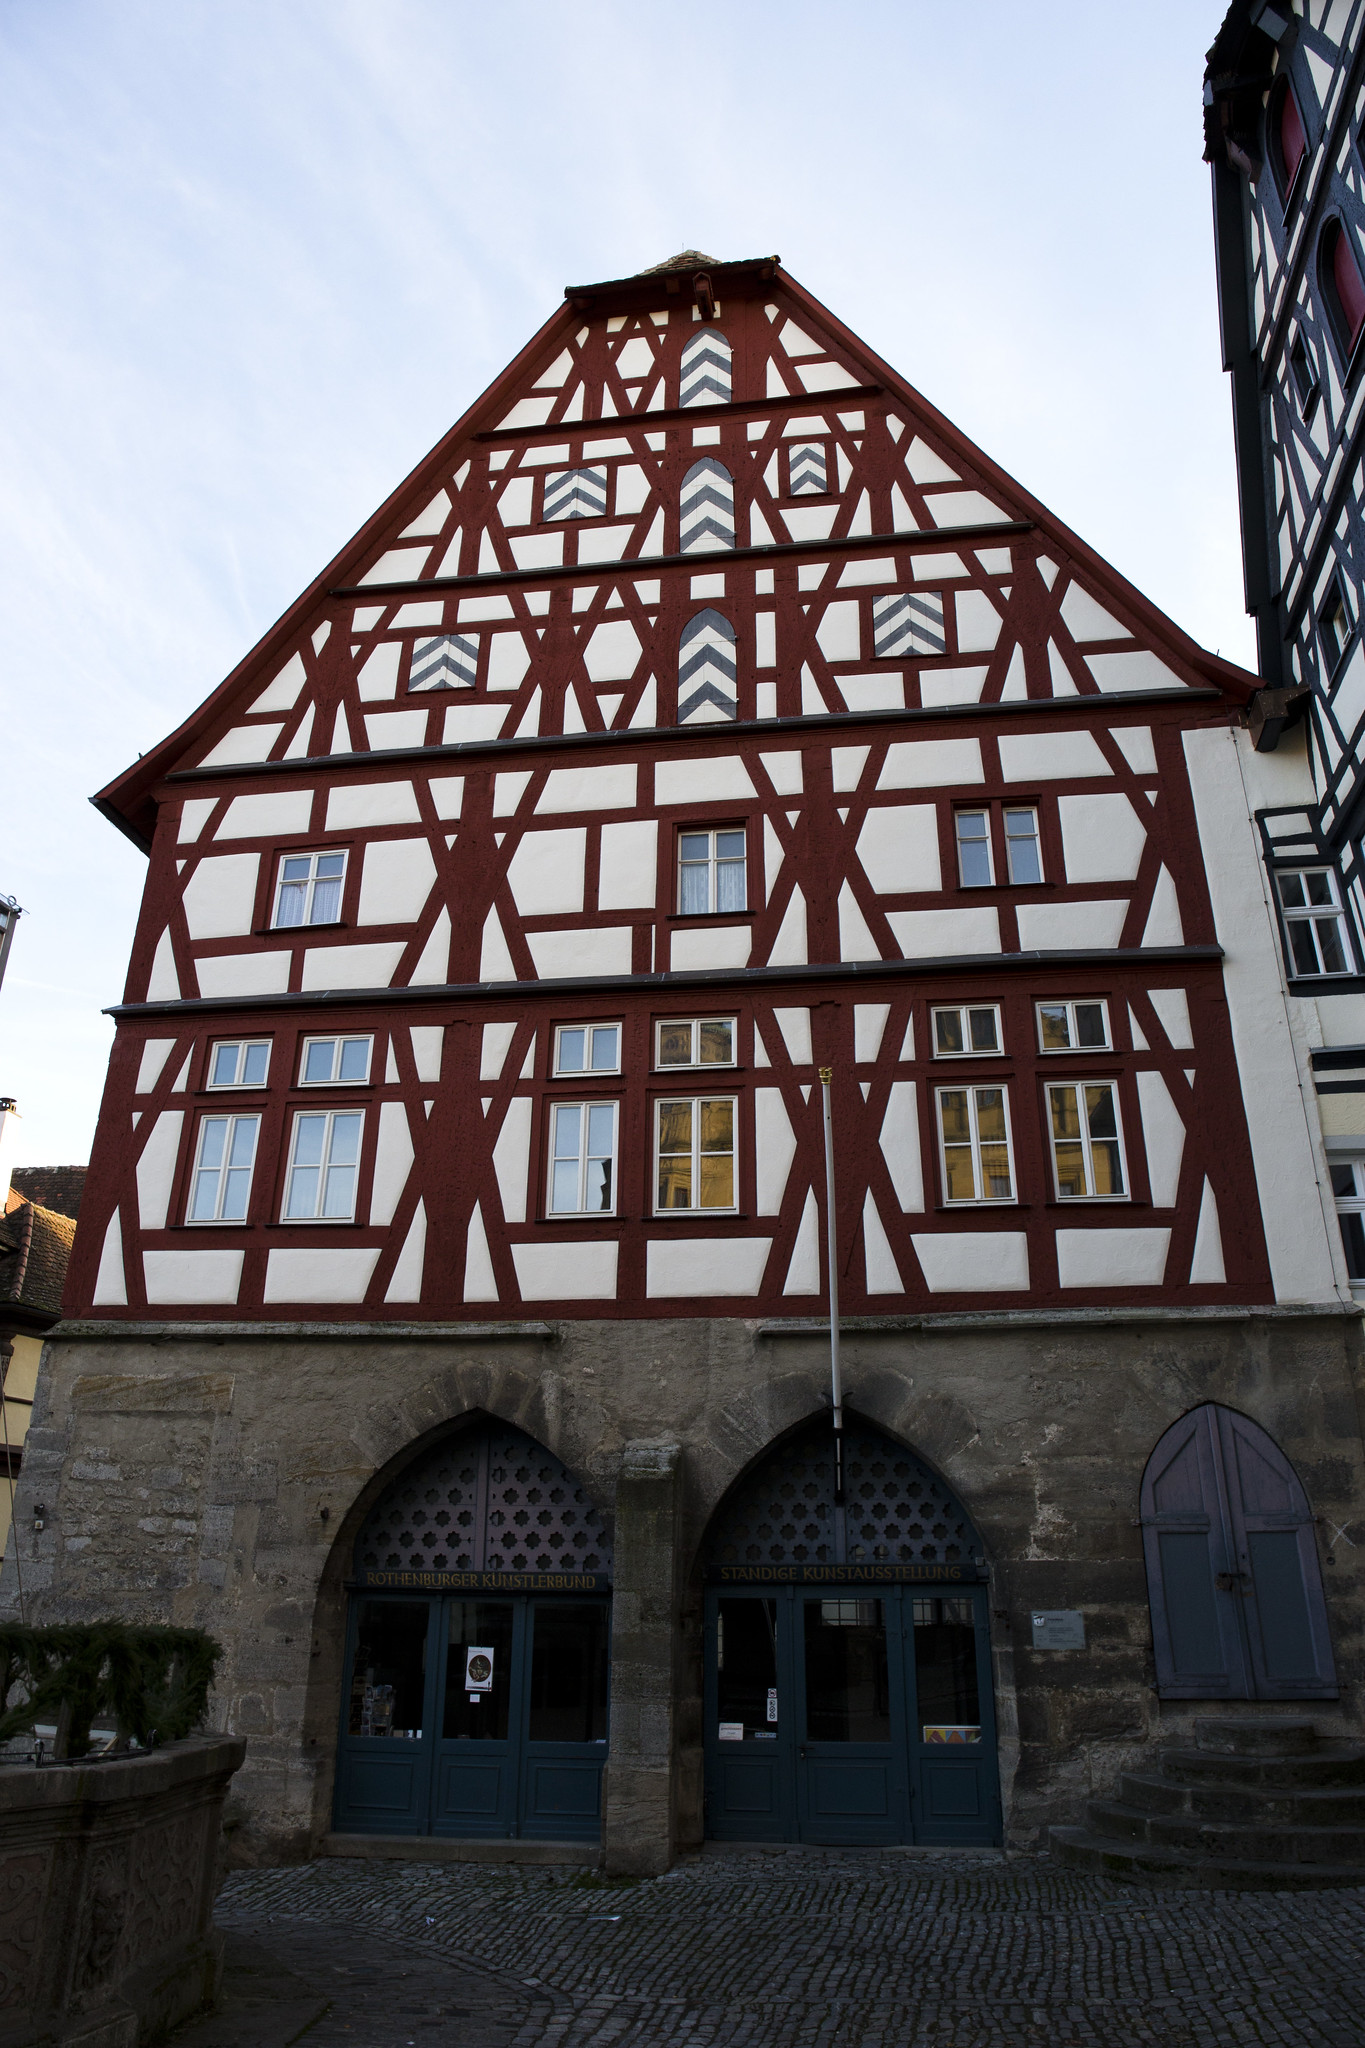 Building in Rothenburg ob der Tauber, Germany